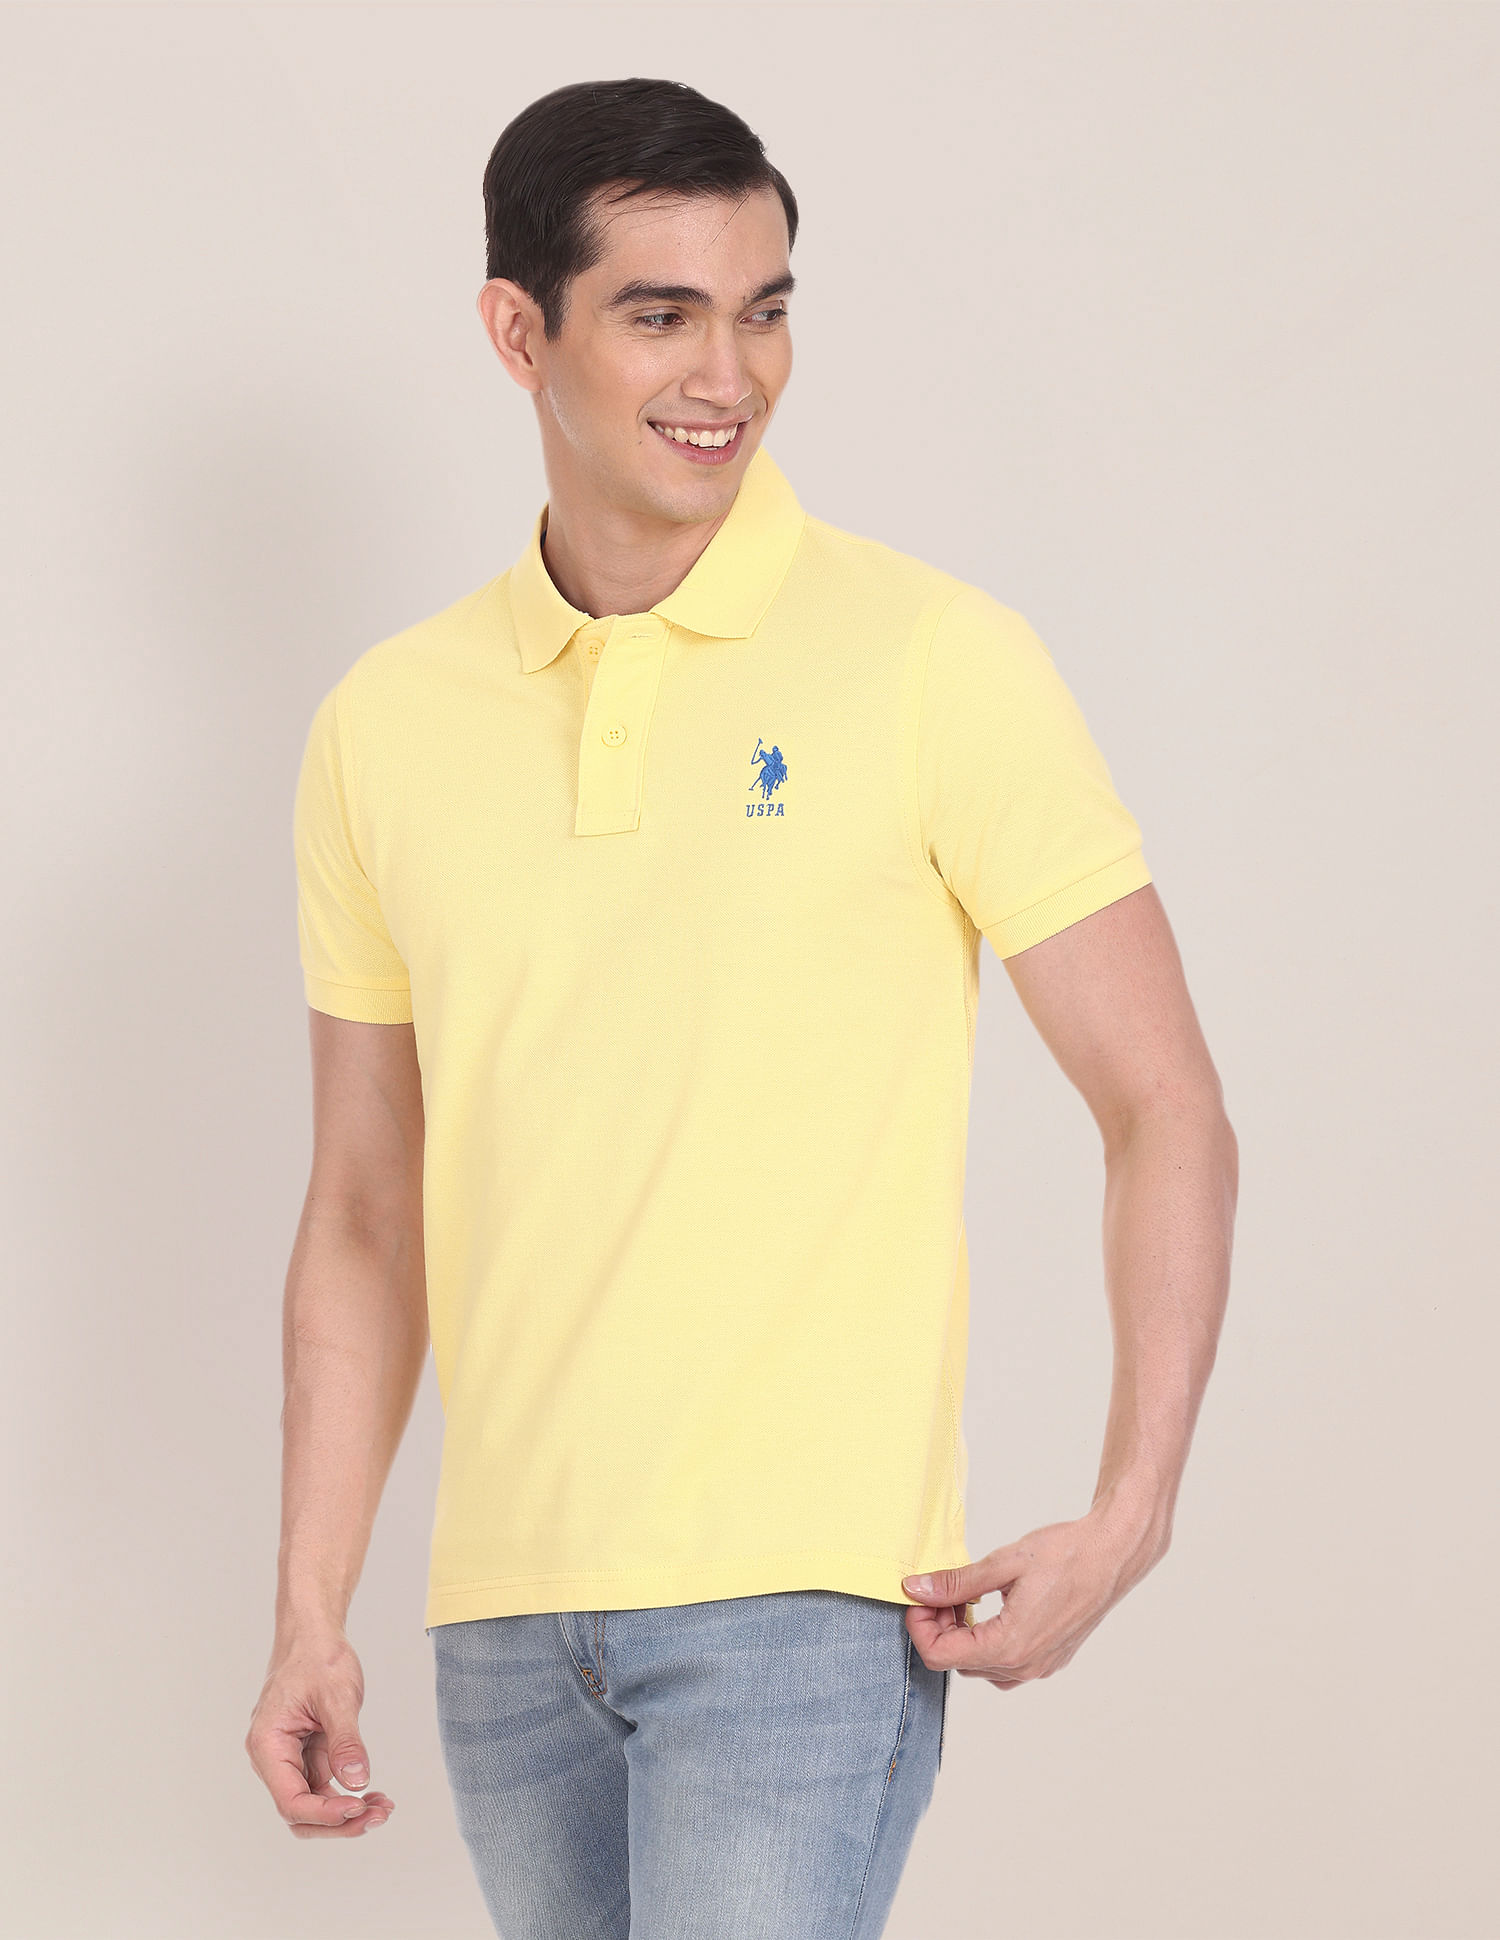 U.S. Polo Assn. Cotton Luxury Polo Shirt, Yellow (S)